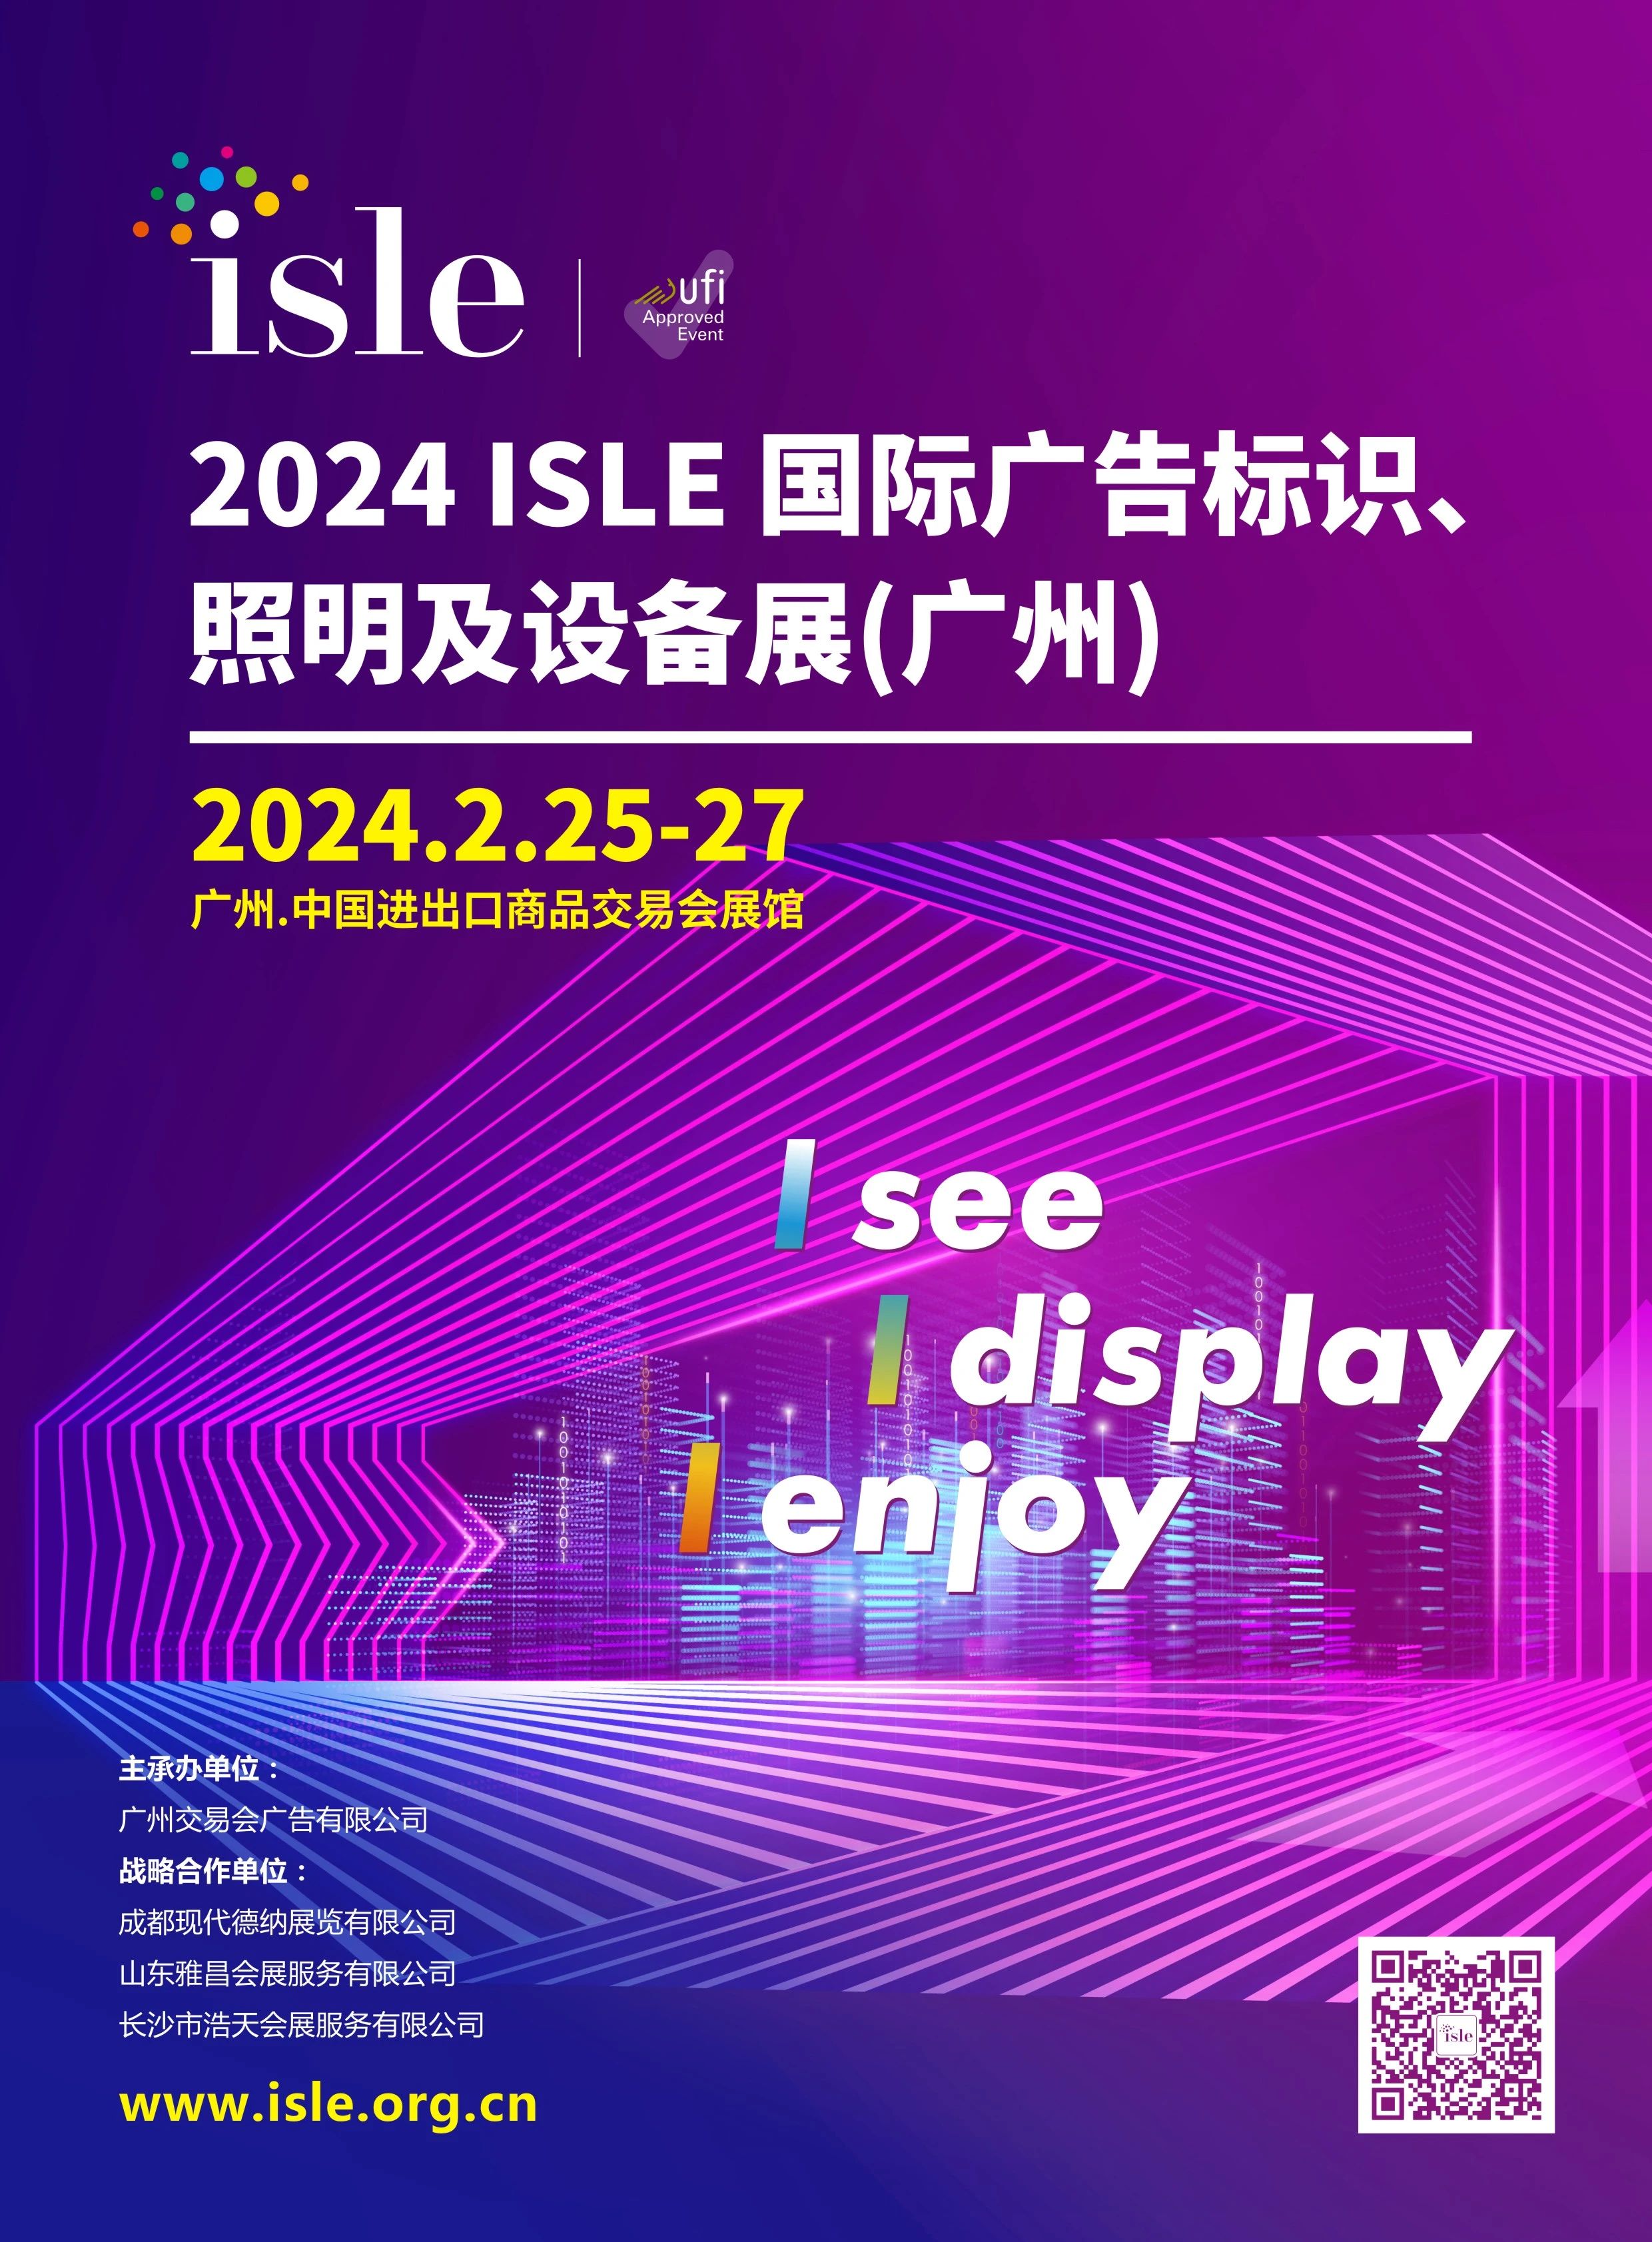 穗蓉济长四地广告展组委会携手打造2024 ISLE广告标识、照明及设备展